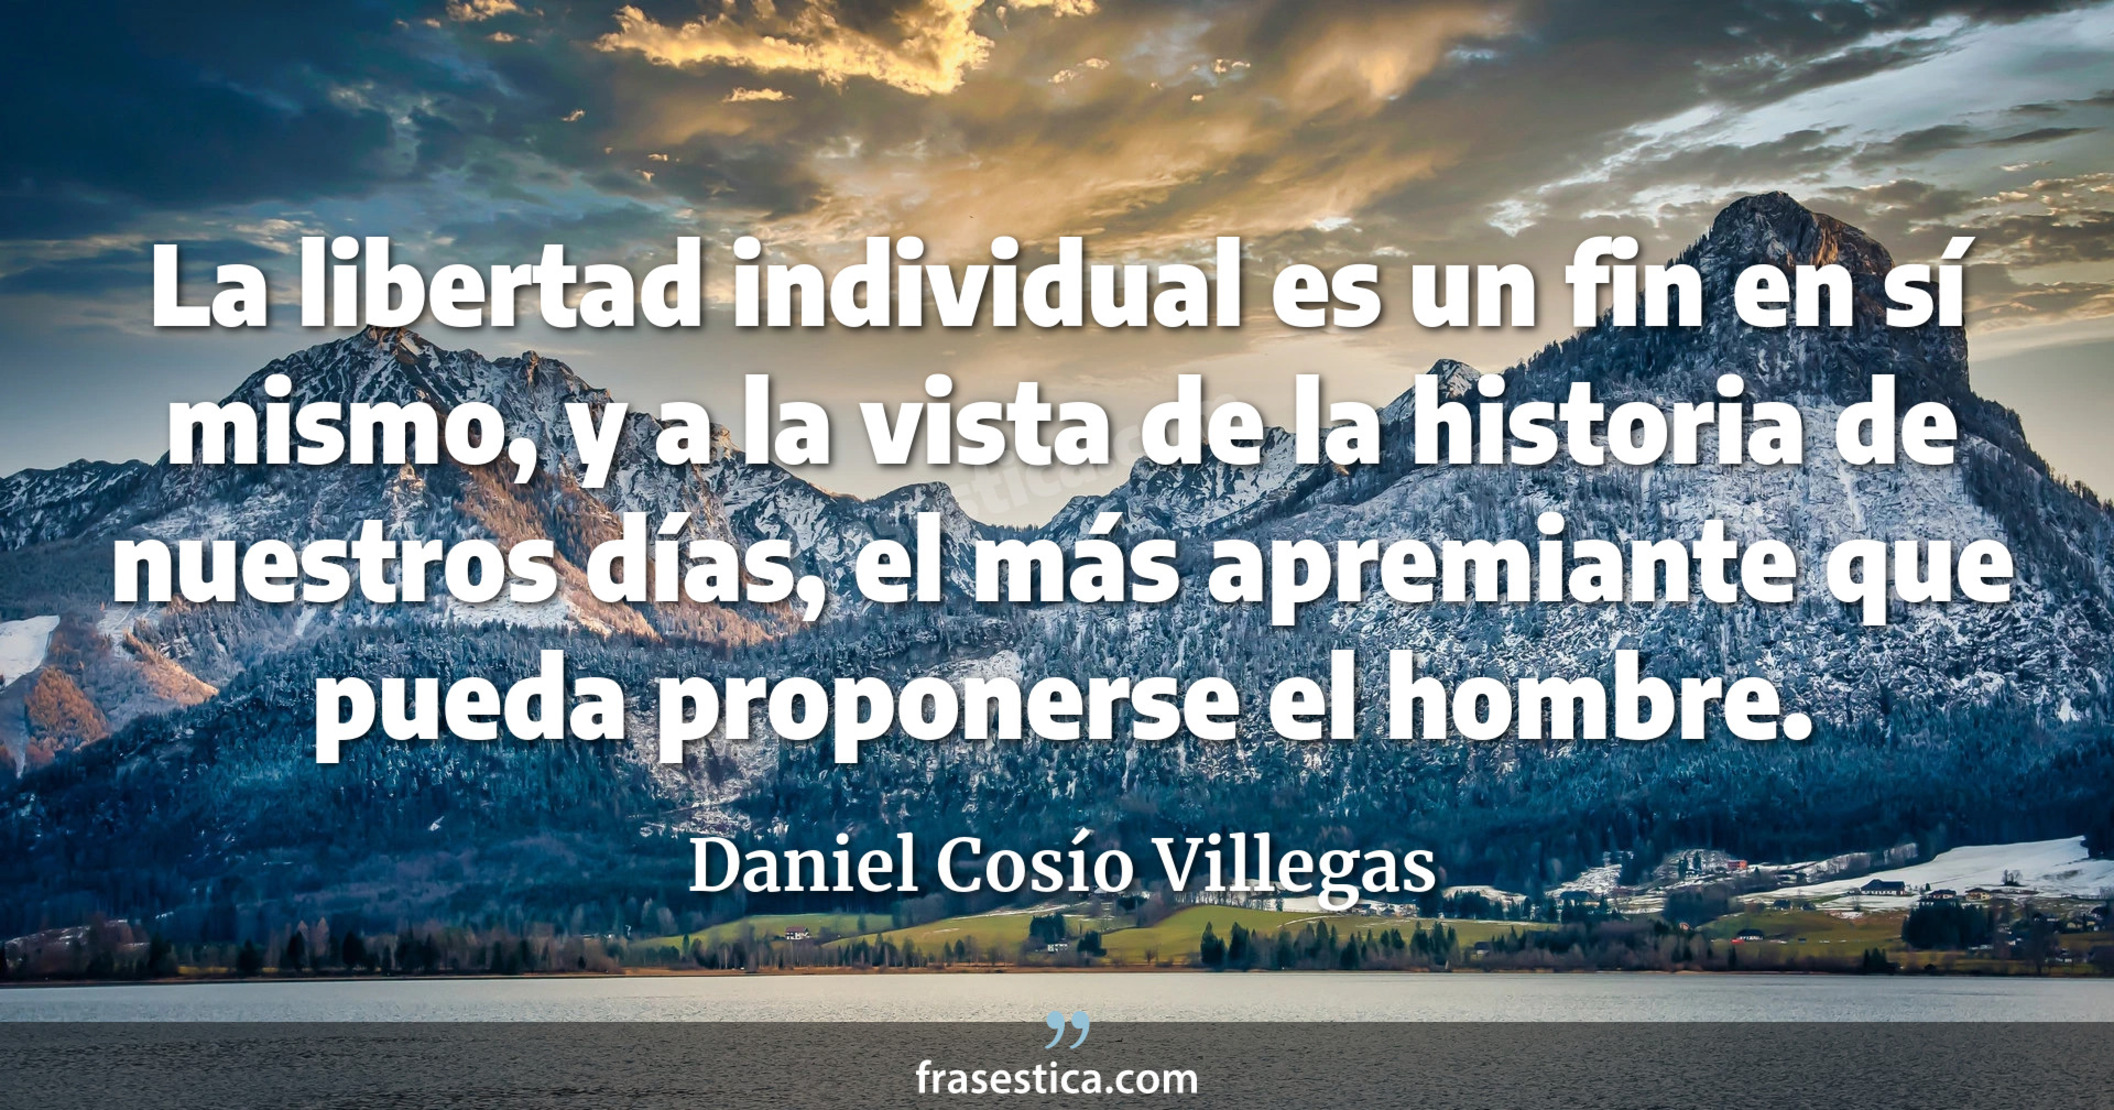 La libertad individual es un fin en sí mismo, y a la vista de la historia de nuestros días, el más apremiante que pueda proponerse el hombre. - Daniel Cosío Villegas